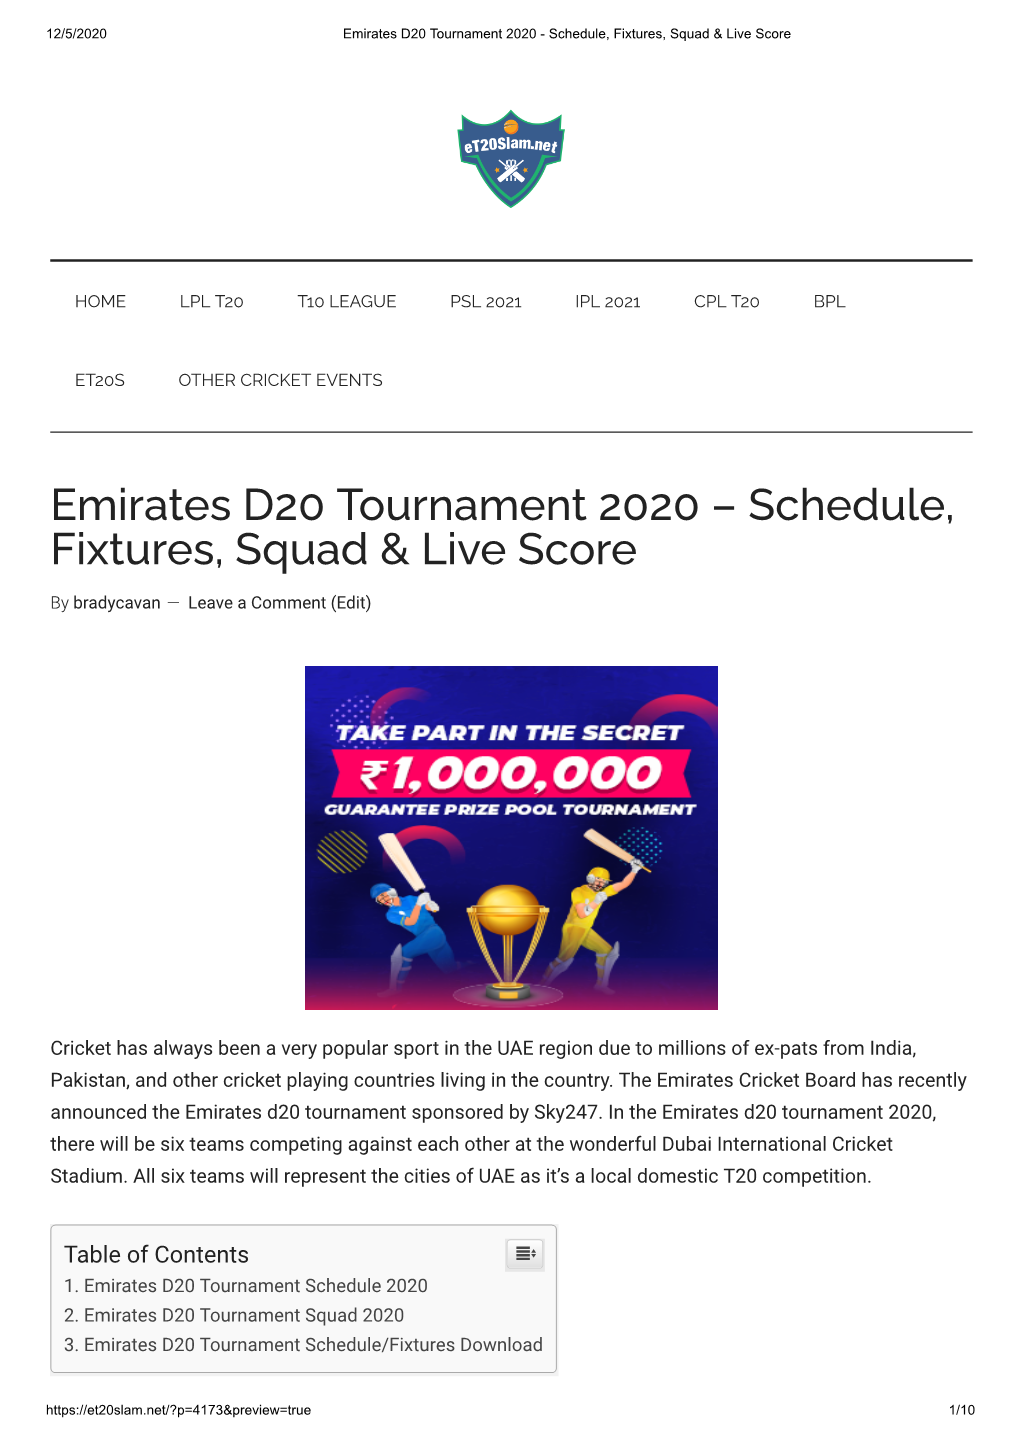 Emirates D20 Tournament 2020 - Schedule, Fixtures, Squad & Live Score